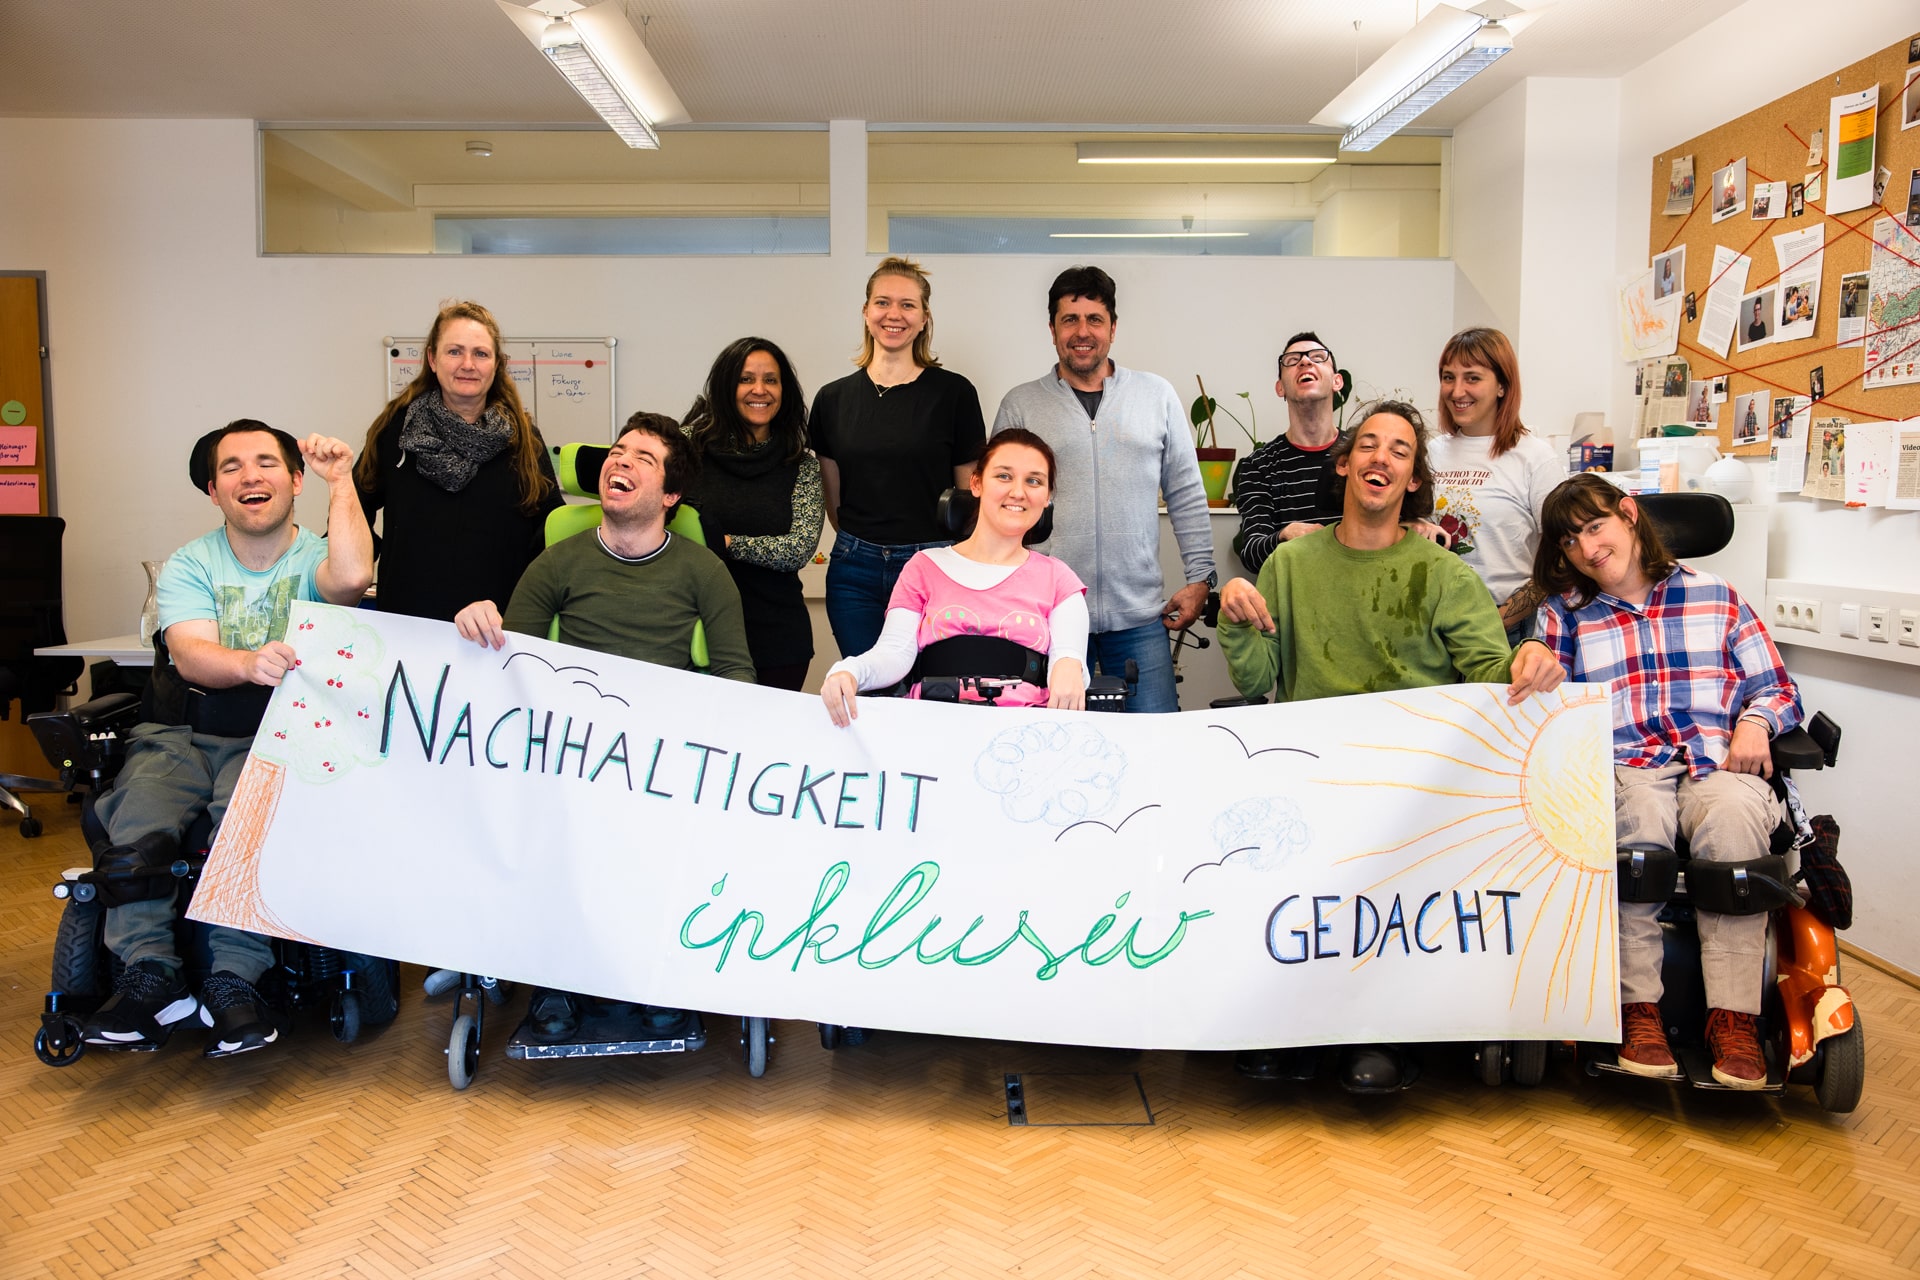 Menschengruppe stehend und sitzend in Rollstühlen mit Plakat in Händen mit Aufschrift "Nachhaltigkeit inklusiv gedacht"